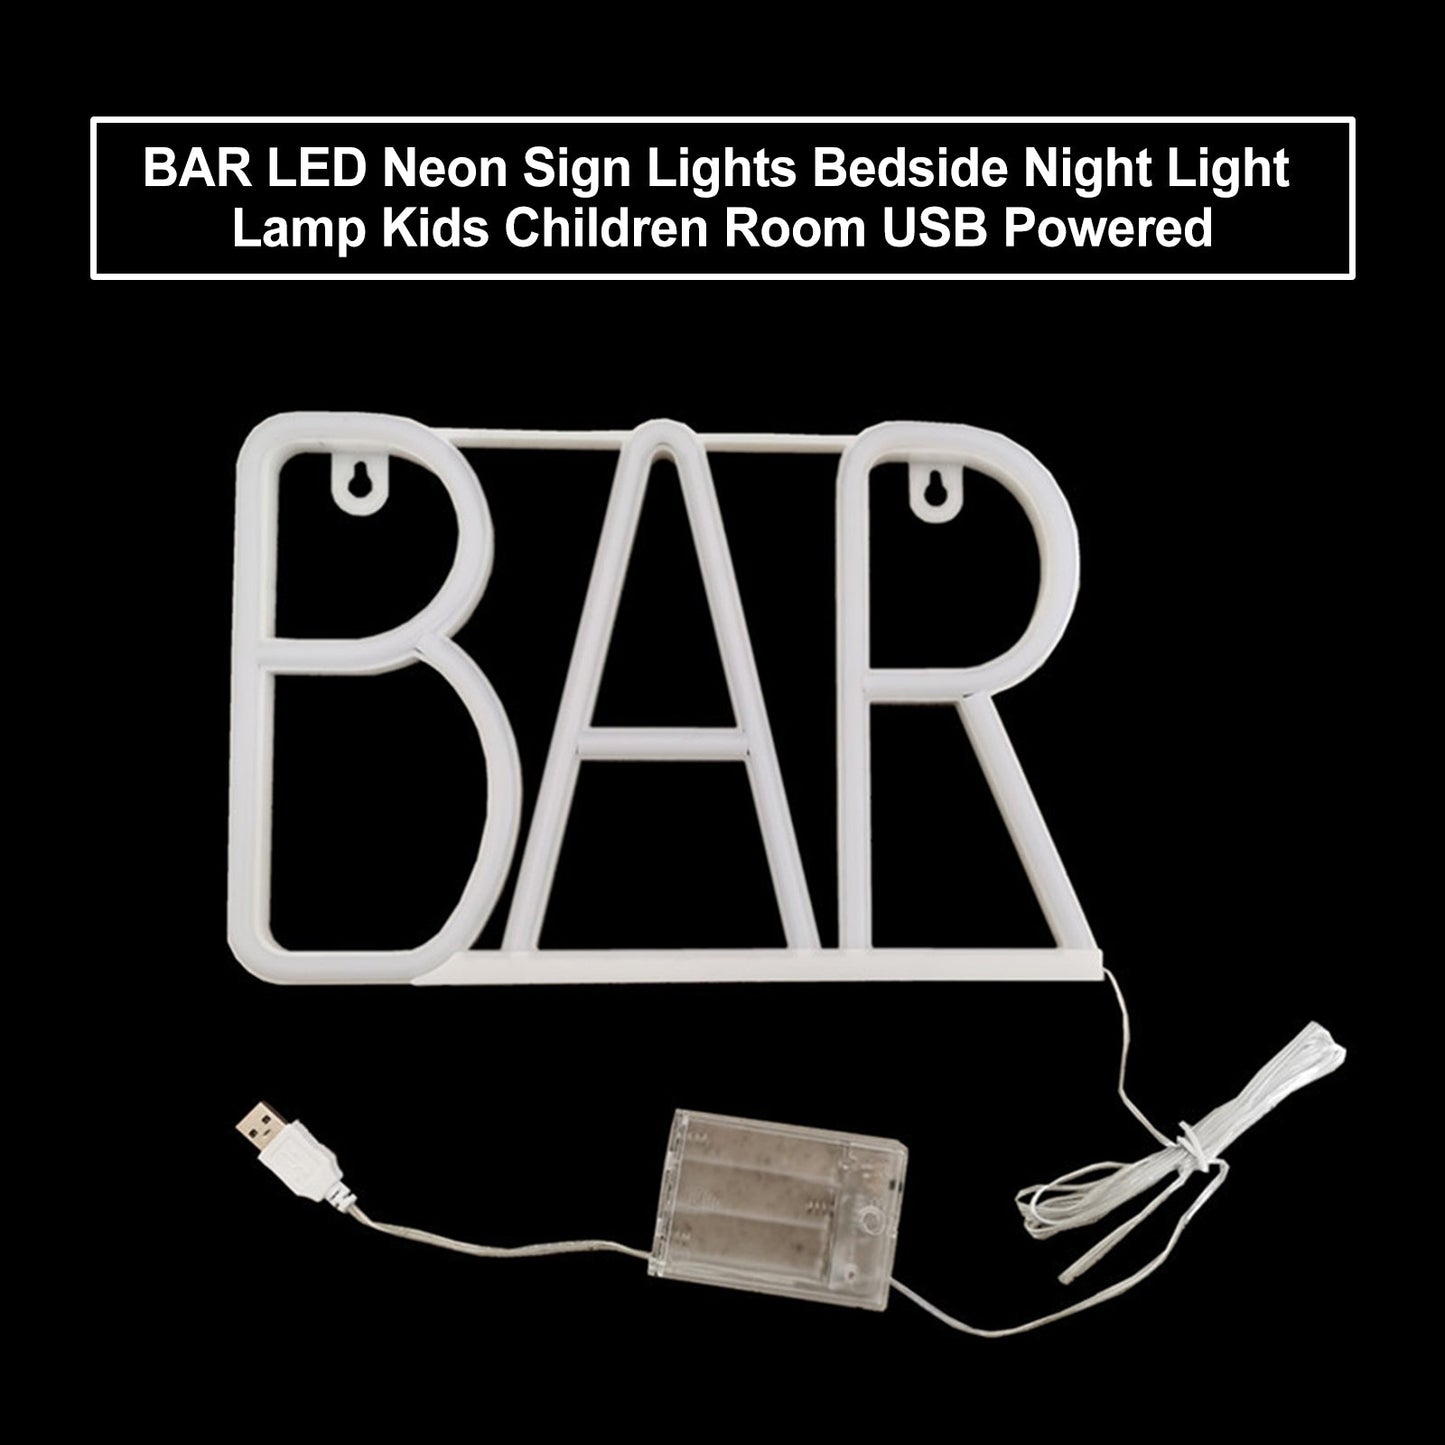 Bar -LED -Neonschild Lichter Nacht Nacht Licht Lampe Kinder Kinder Zimmer USB Powered